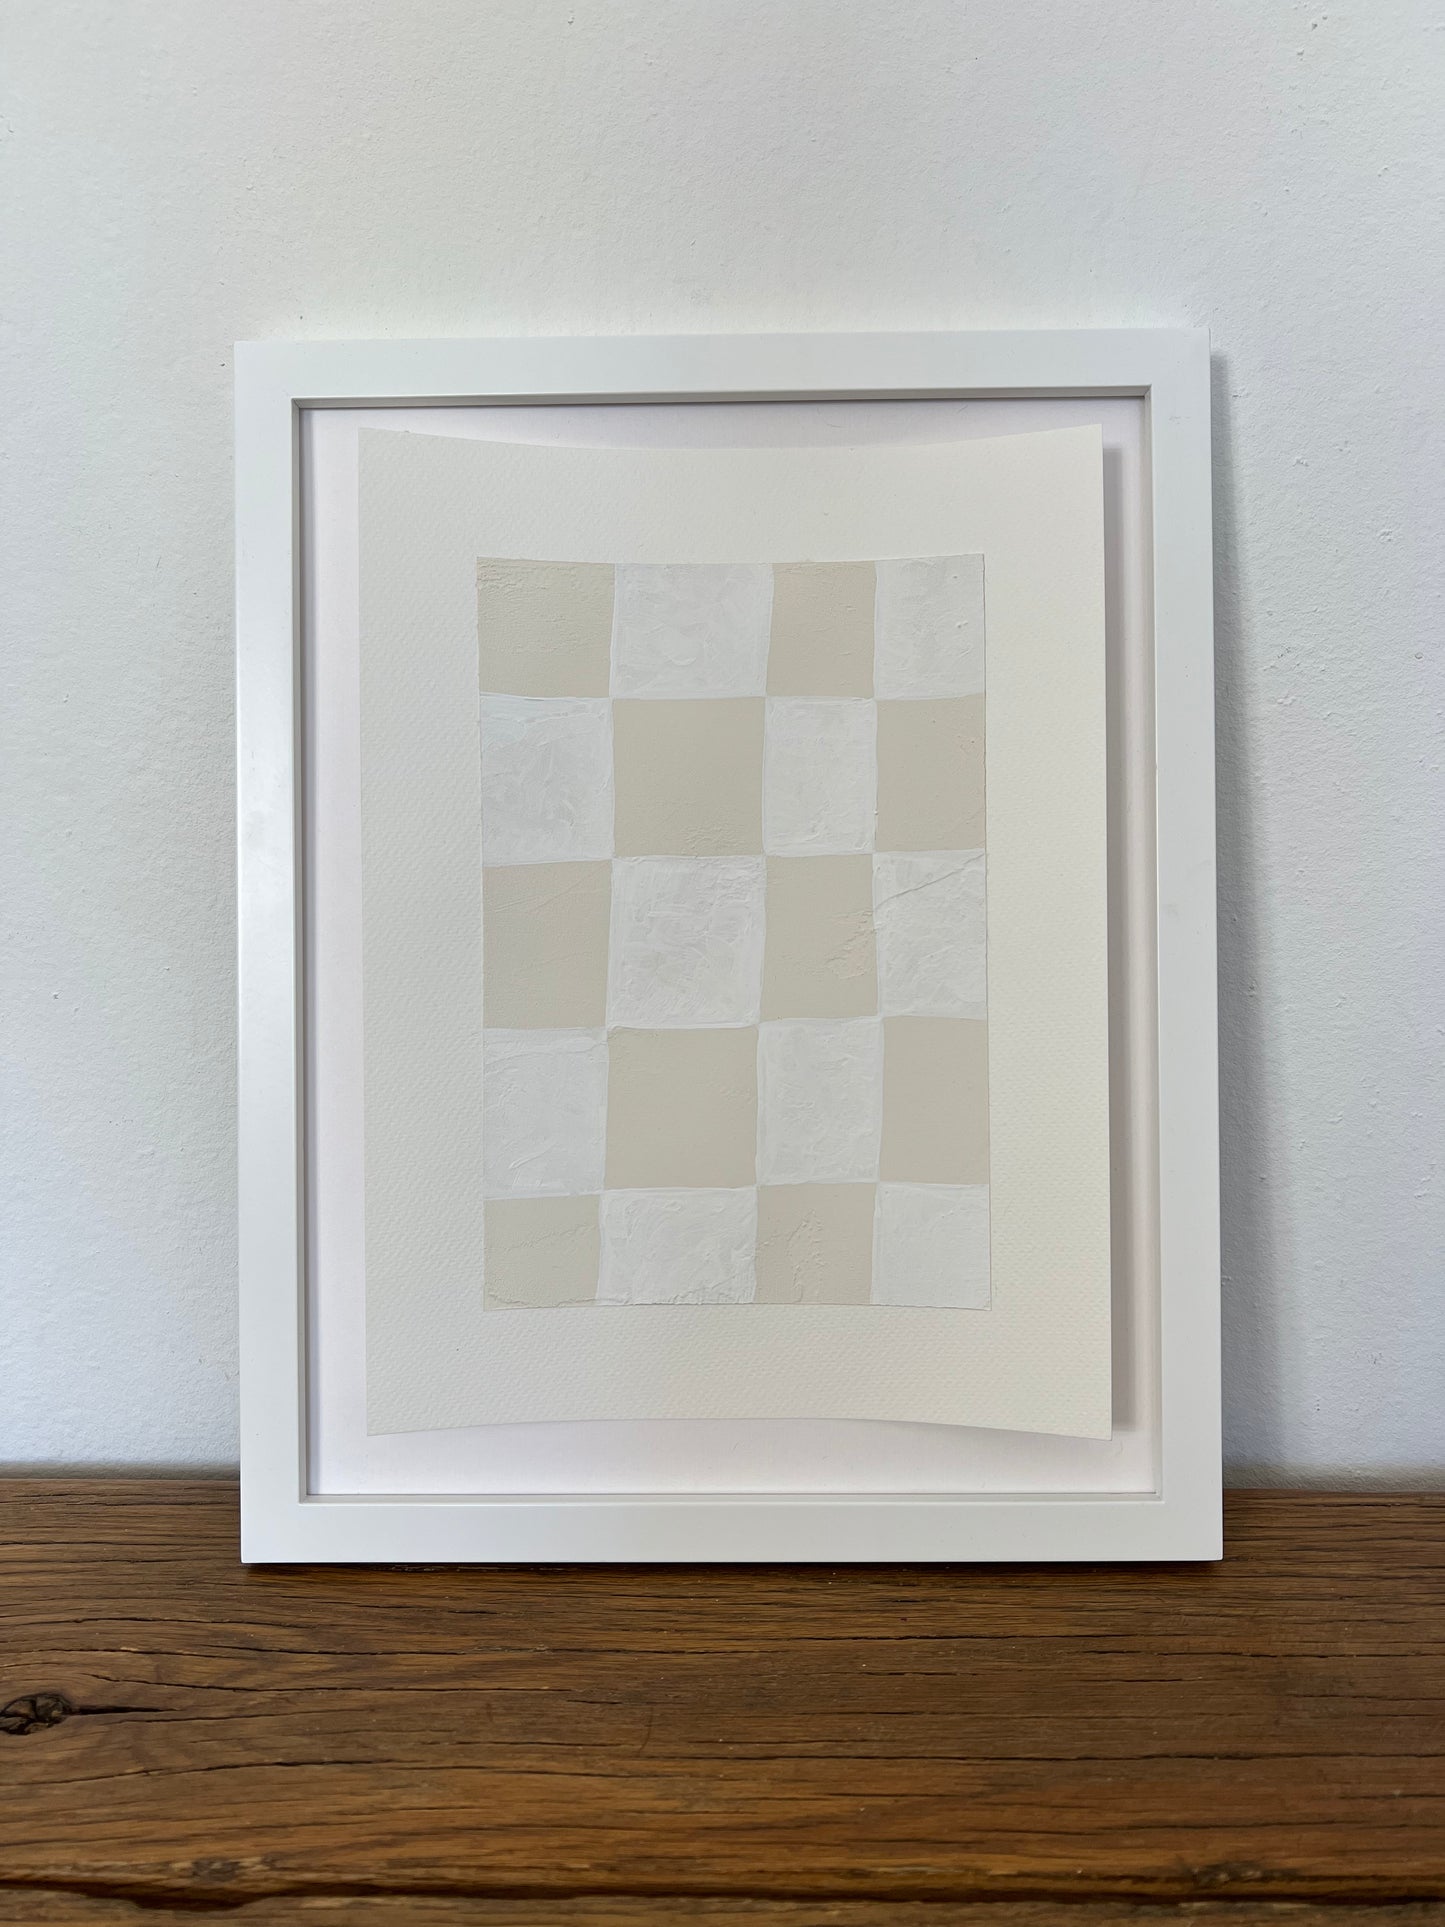 ‘White Checker Board’ on paper